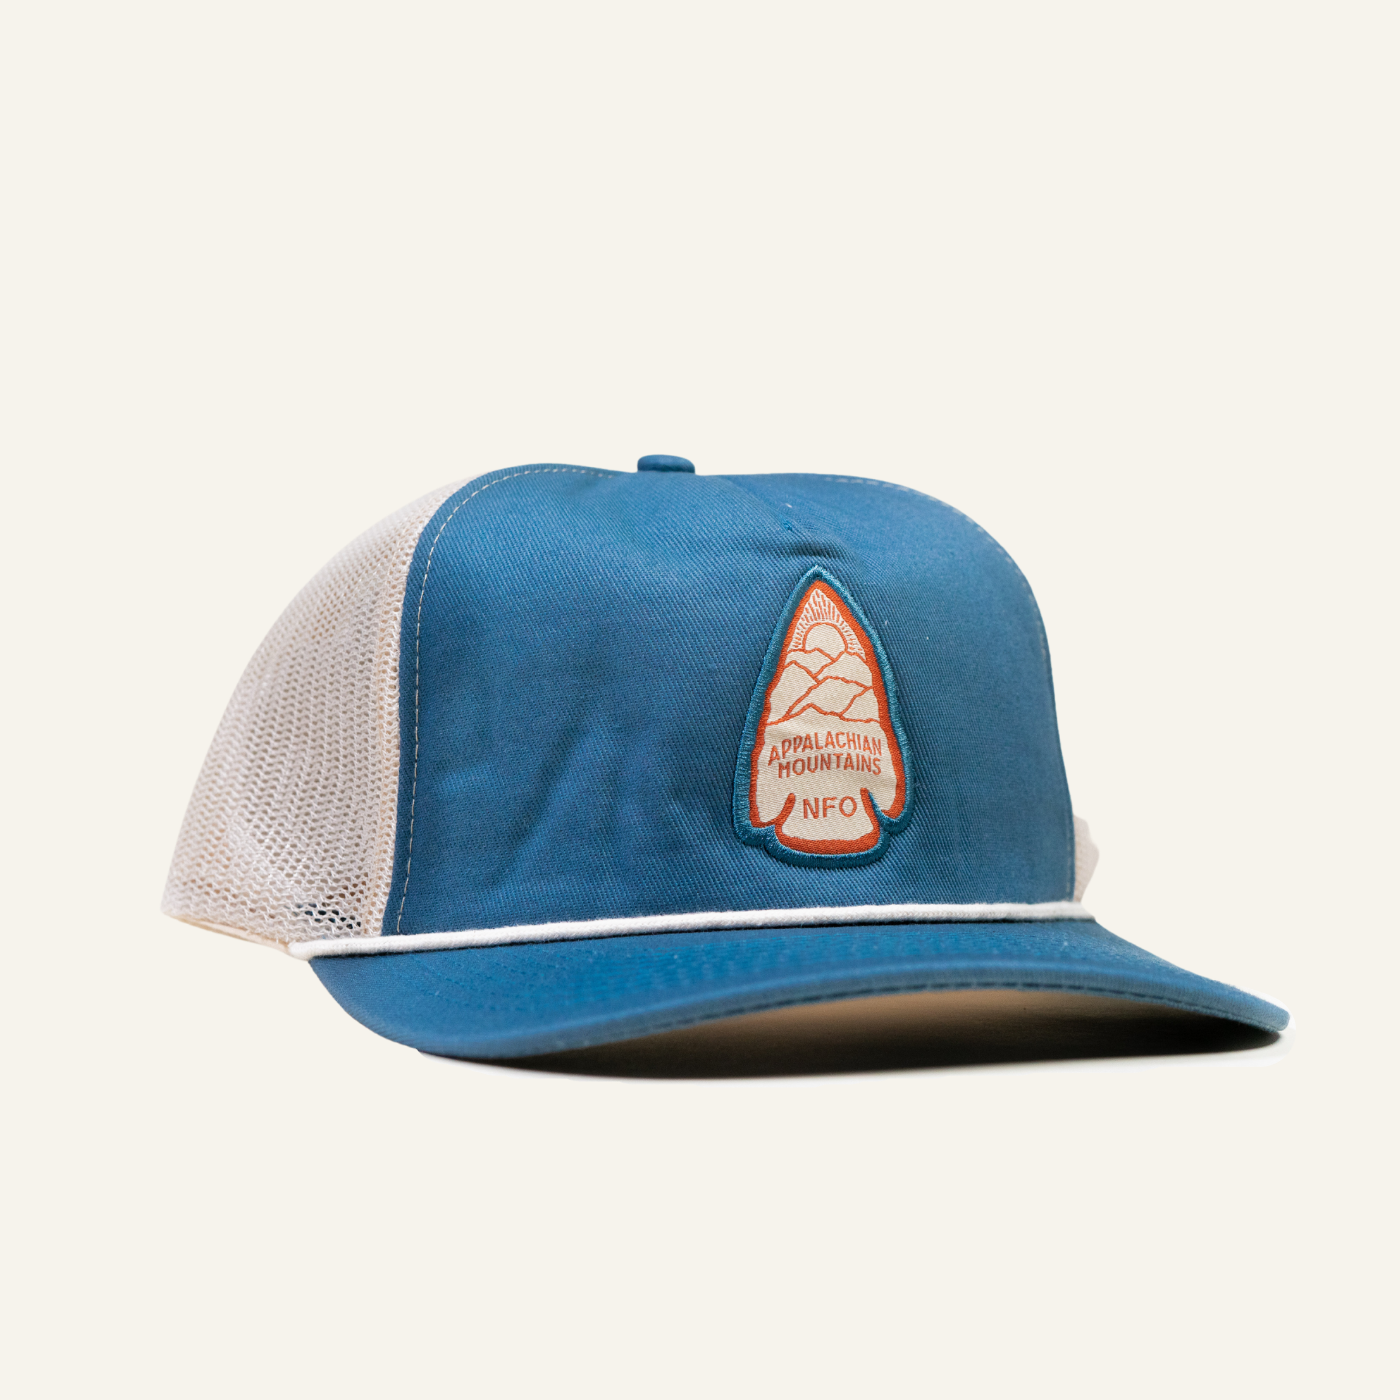 Arrowhead Trucker Hat